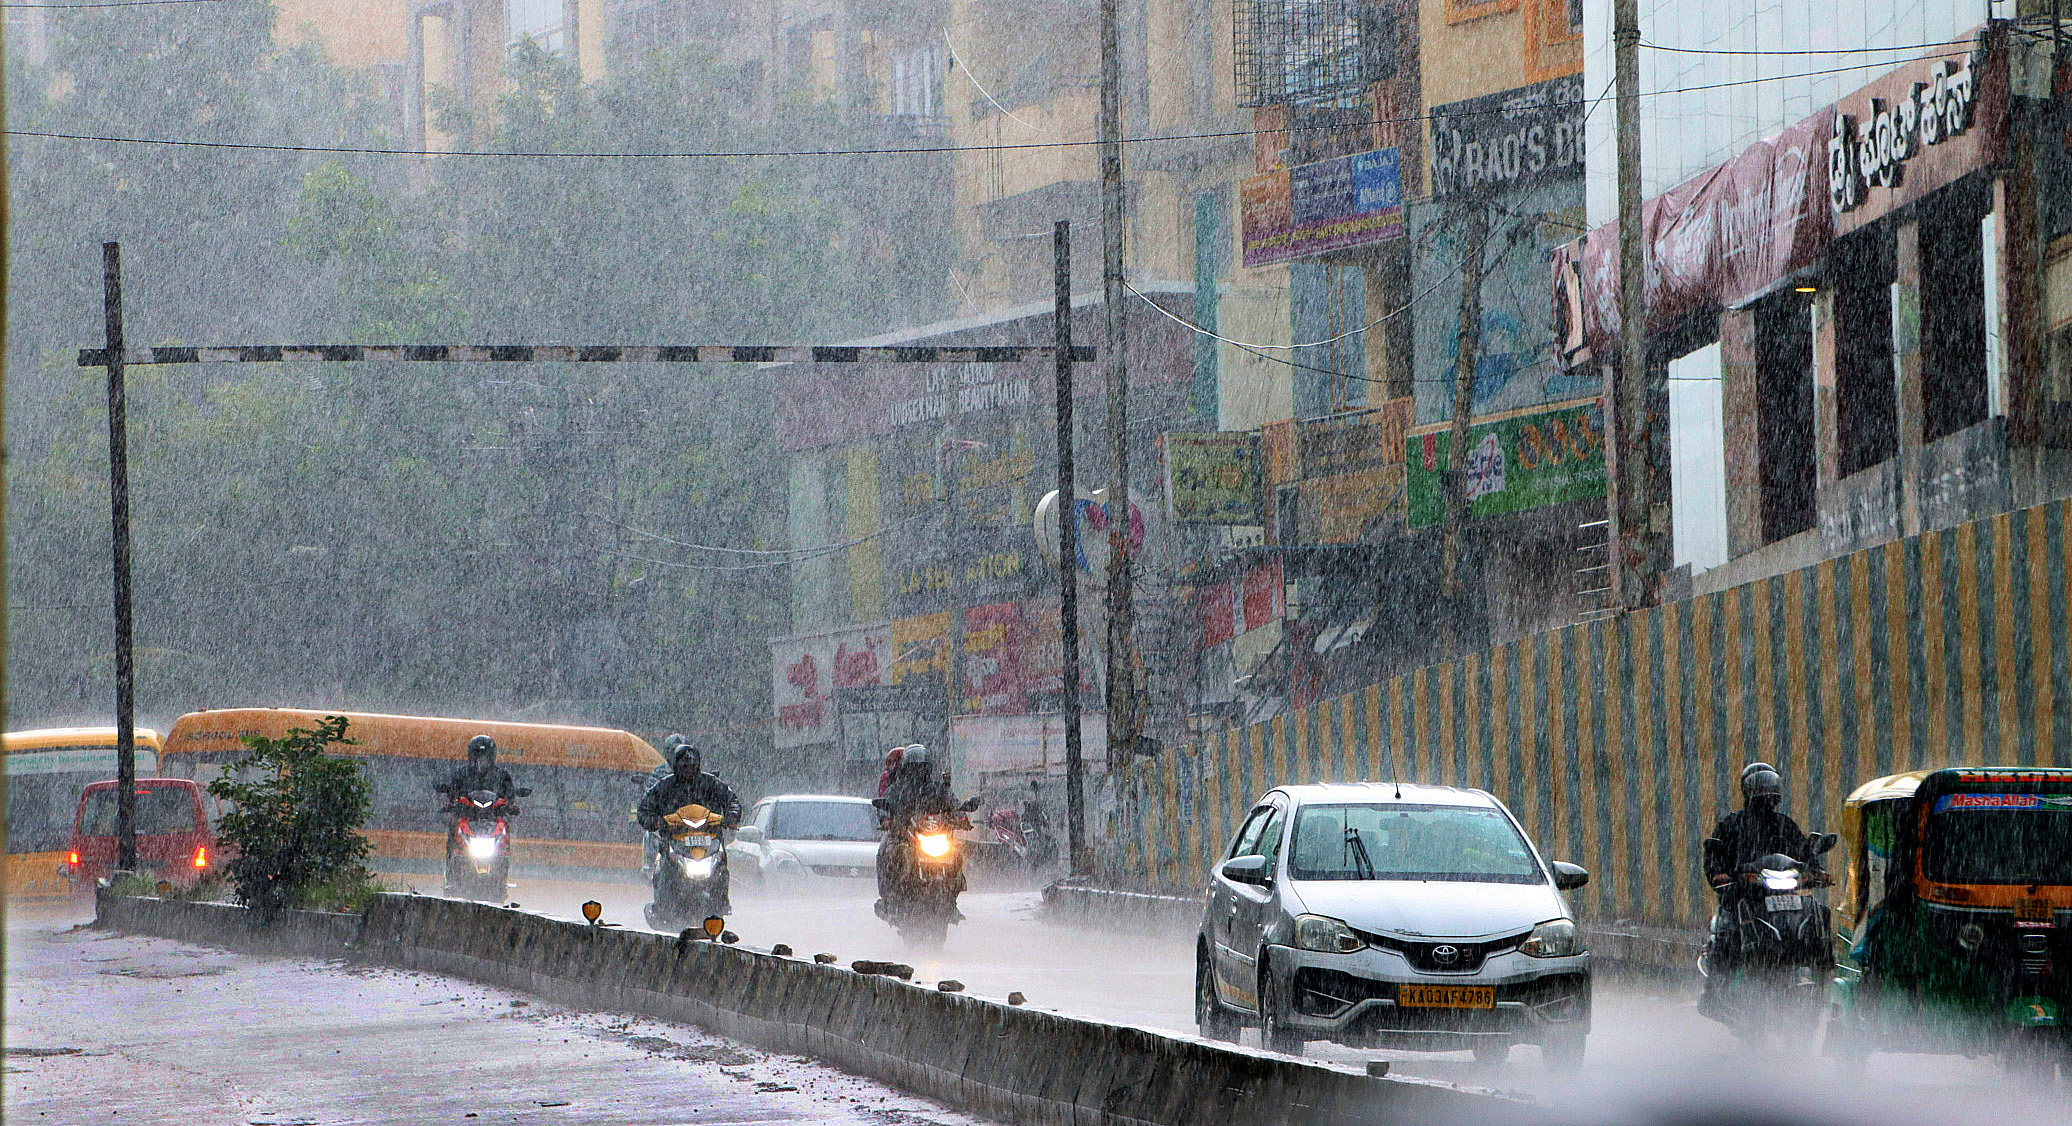 बेंगलूरु. शहर में बुधवार को जहां कई इलाकों में तेज धूप खिली रही वहीं
दोड्डबानसवाड़ी सहित कई इलाकों में तेज बरसात हुई।